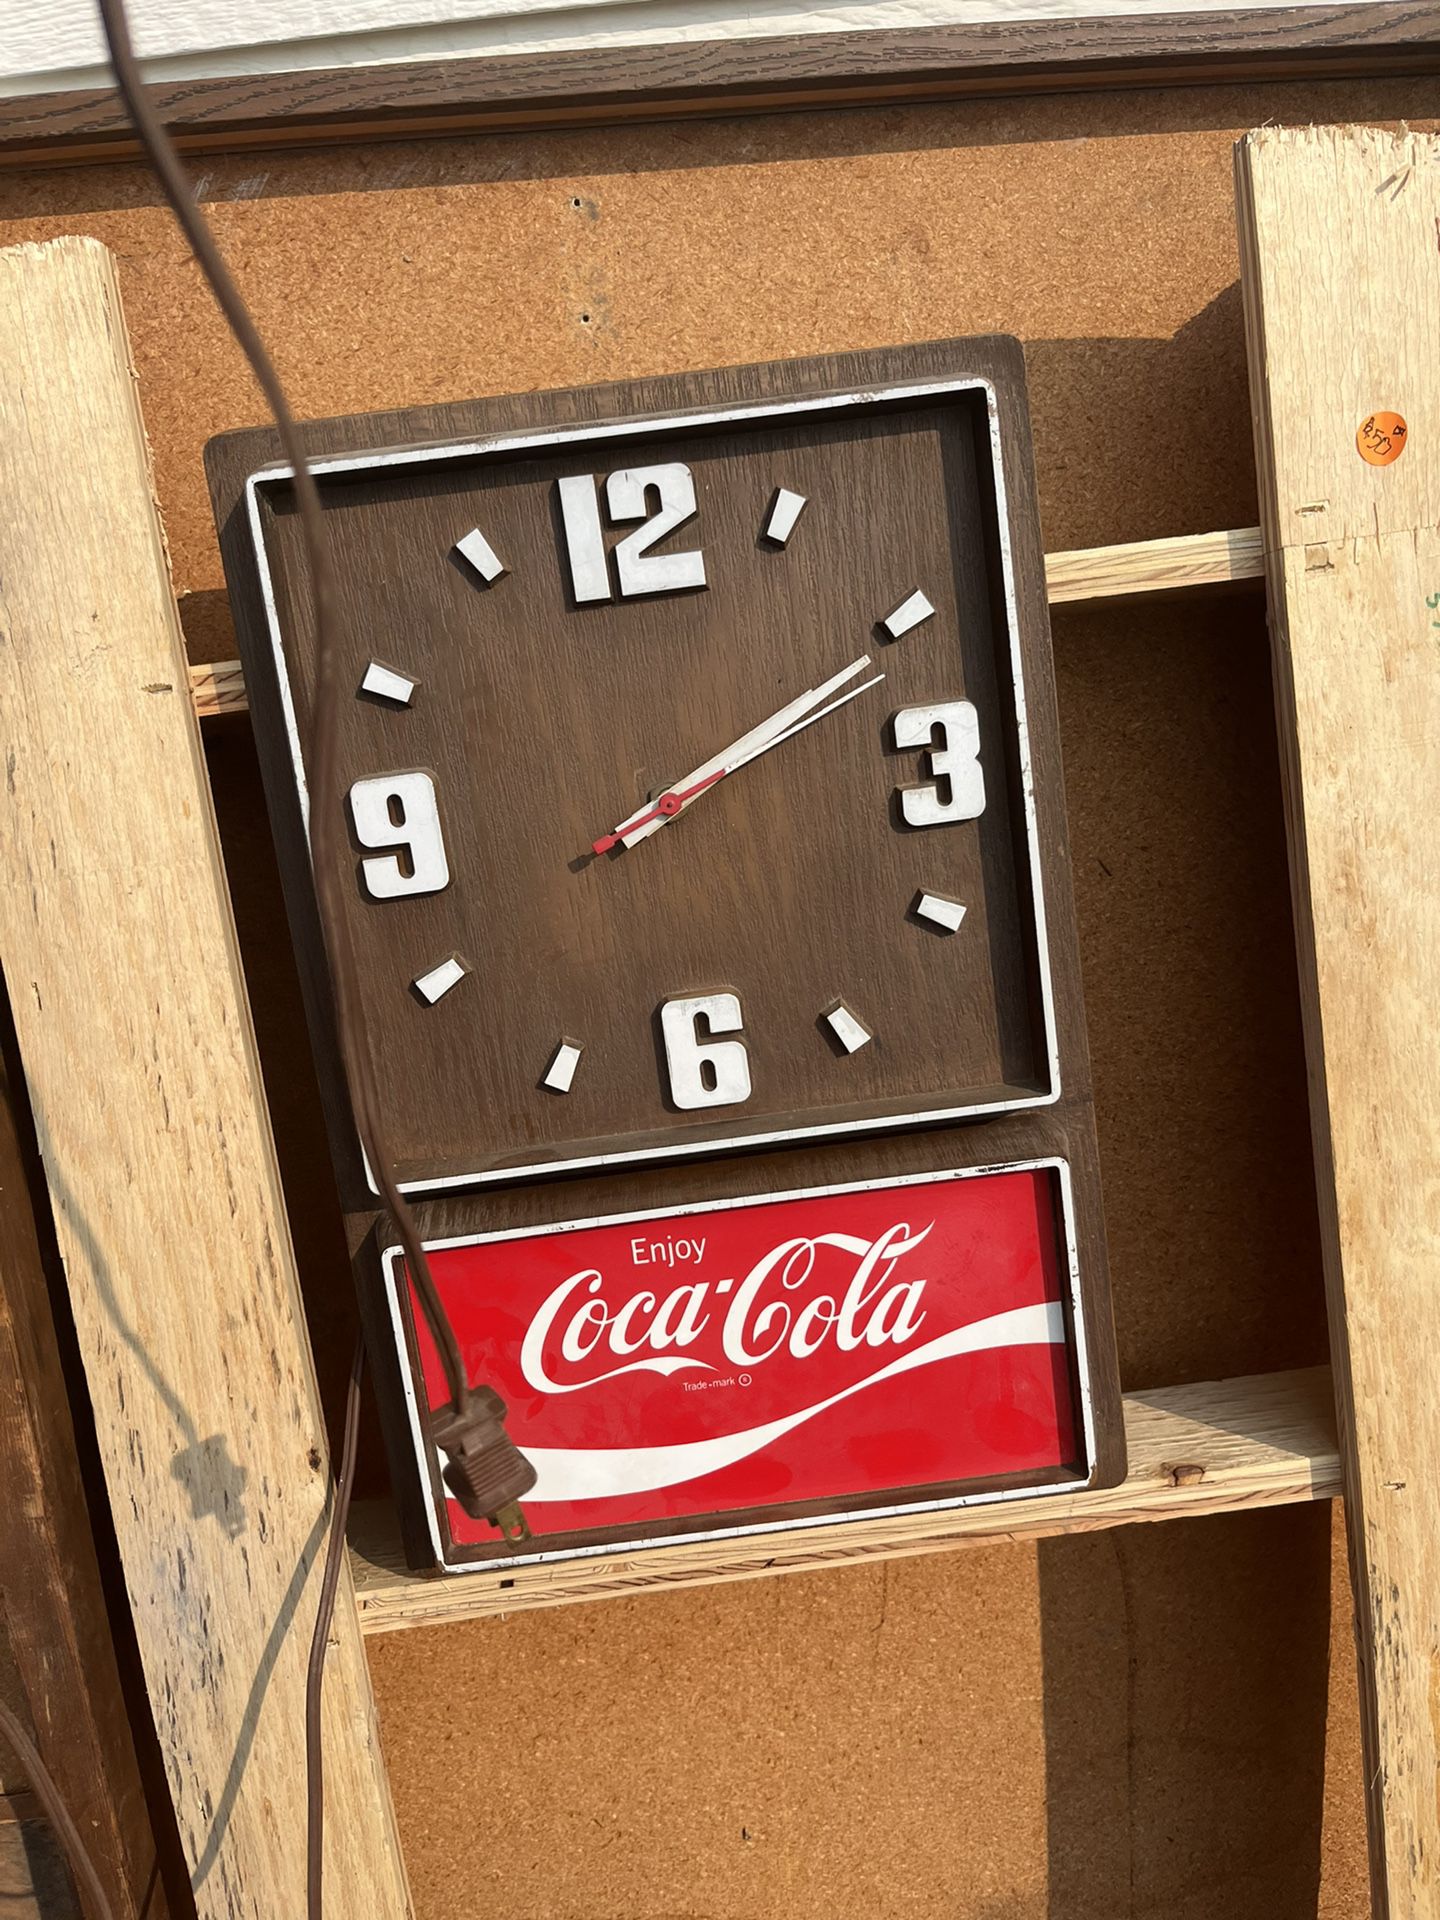 Antique Coca Cola Clock